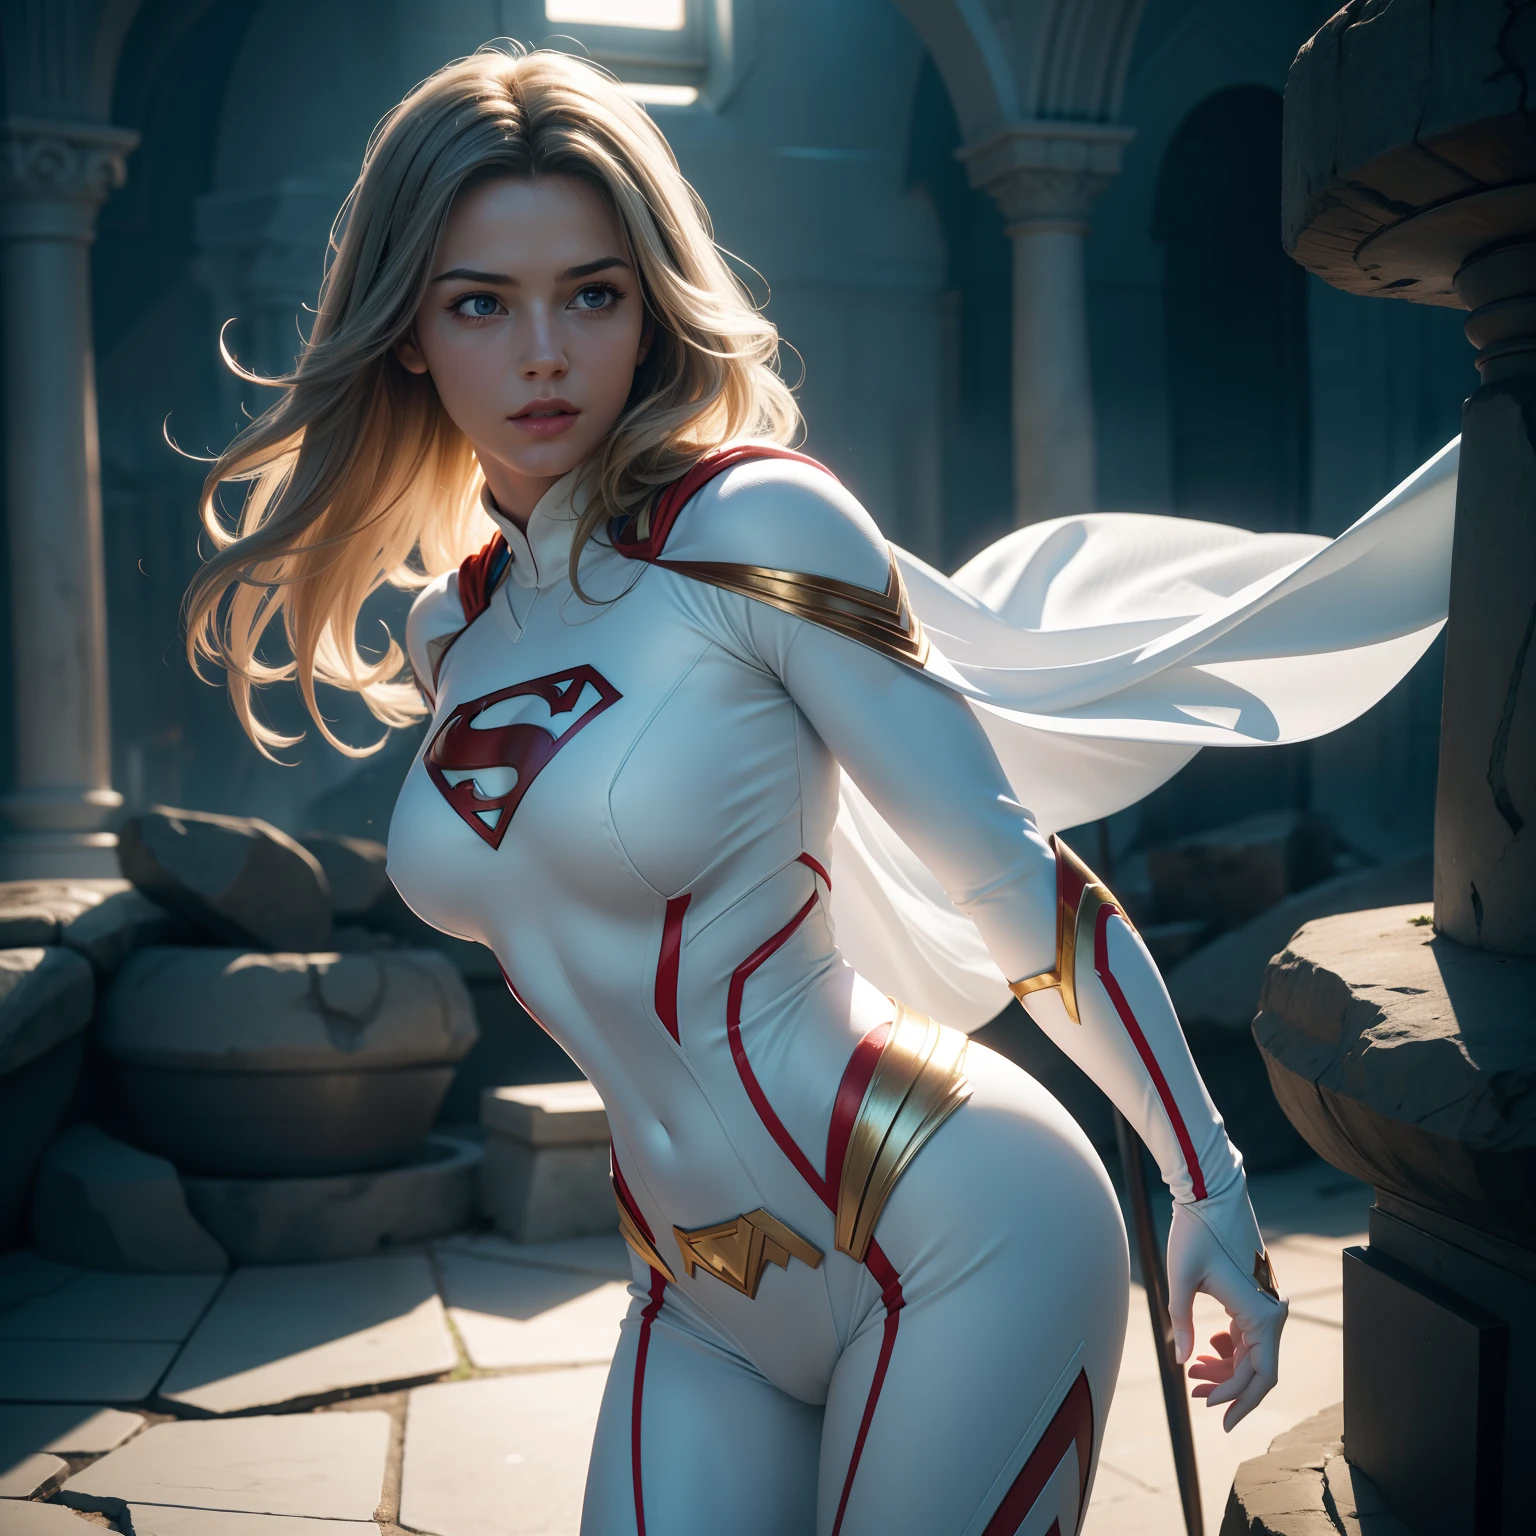 Супермен (женщина, Белый костюм) из комиксов DC, Компьютерная графика с четким фокусом, фотореалистичный, высокая детализация, реалистичный, шедевр, абсурд, Лучшее качество, HDR, высокое качество, высокое разрешение, чрезвычайно подробный, 8к обои, сложные детали, 8к ухд, Full HD, (реалистичное фото:1.2), контраст, Резкое освещение, кинематографическое освещение, естественное освещение, жесткий свет, подсветка, глобальное освещение, Окклюзия окружающей среды